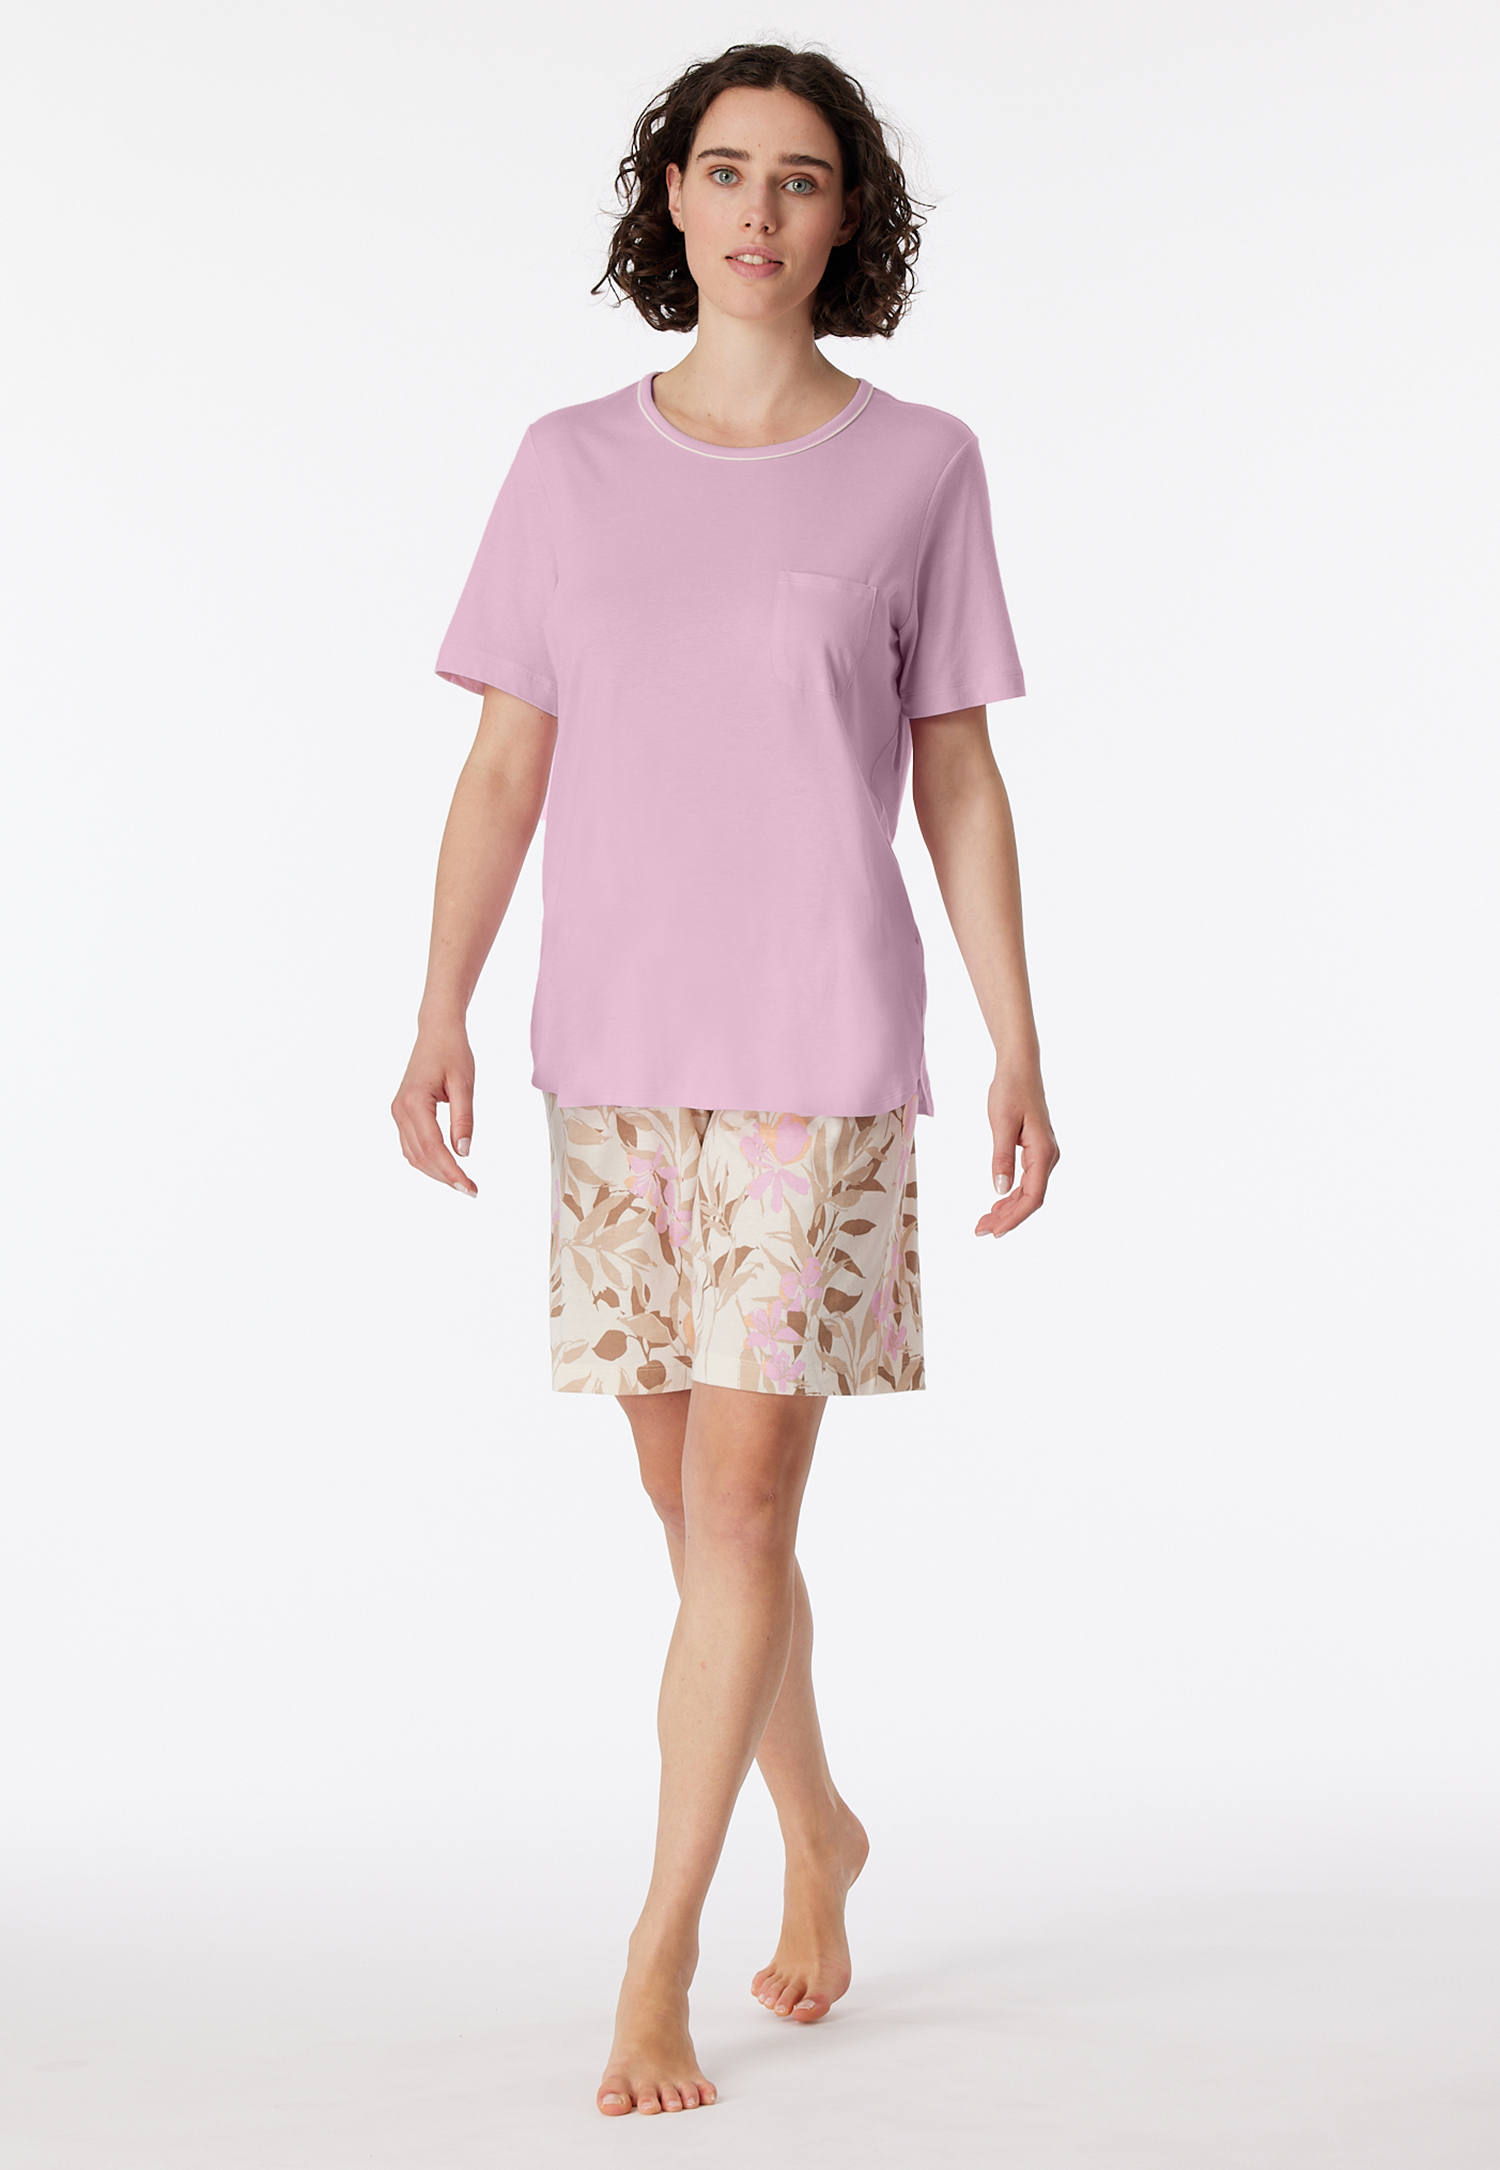 Schlafanzug kurz powder pink - Comfort Nightwear 50 von Schiesser